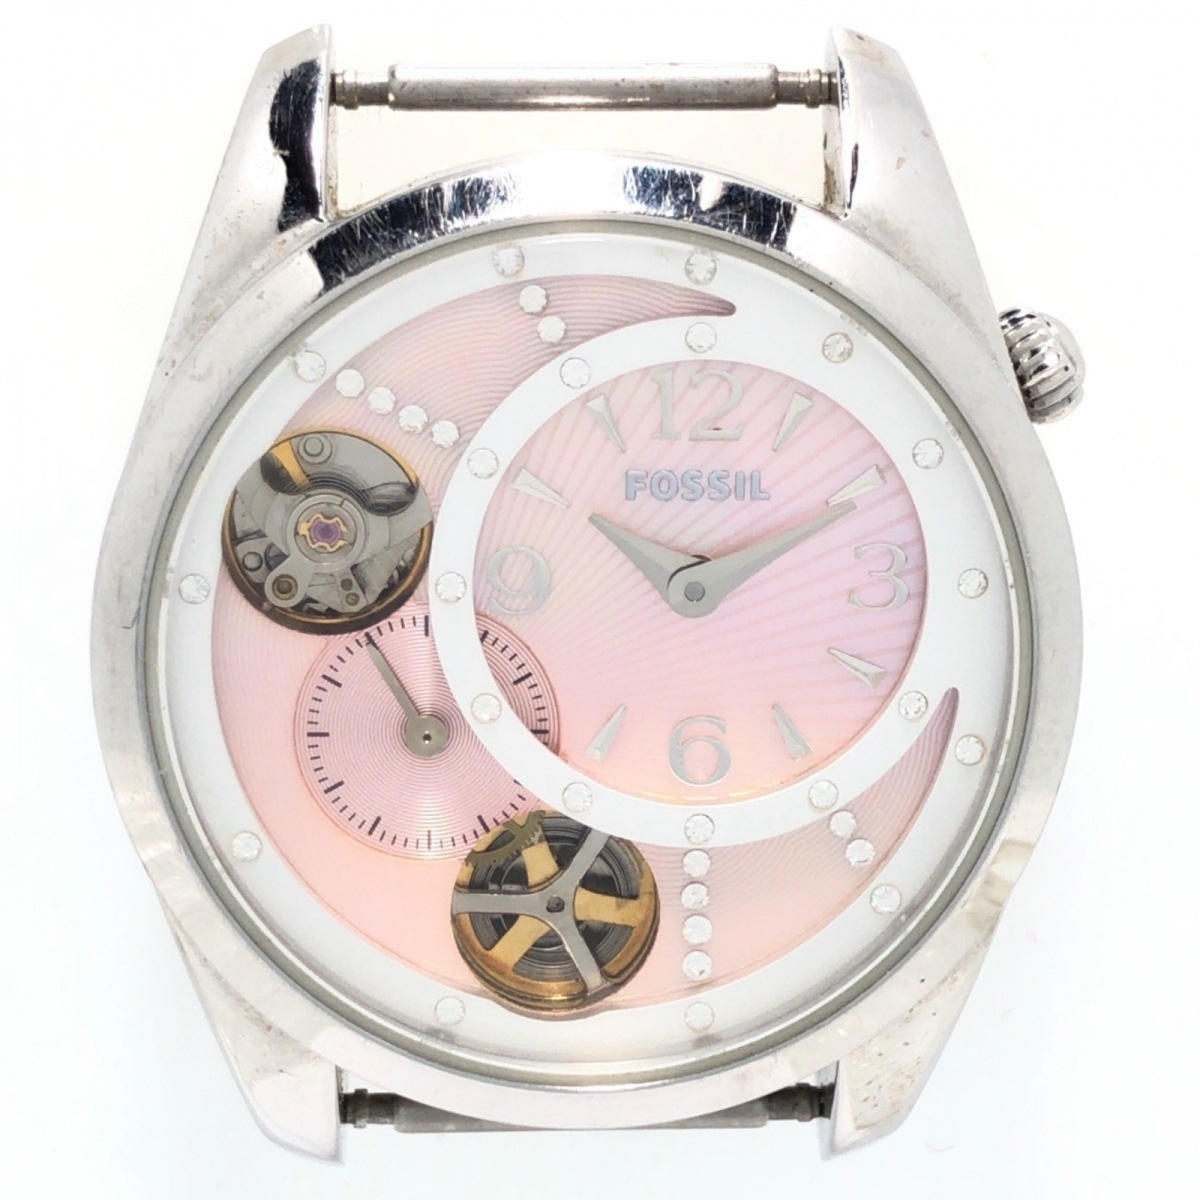 今だけスーパーセール限定今だけスーパーセール限定FOSSIL(フォッシル) TWIST 腕時計 本体のみ シェル文字盤 ピンク 男女兼用腕時計 